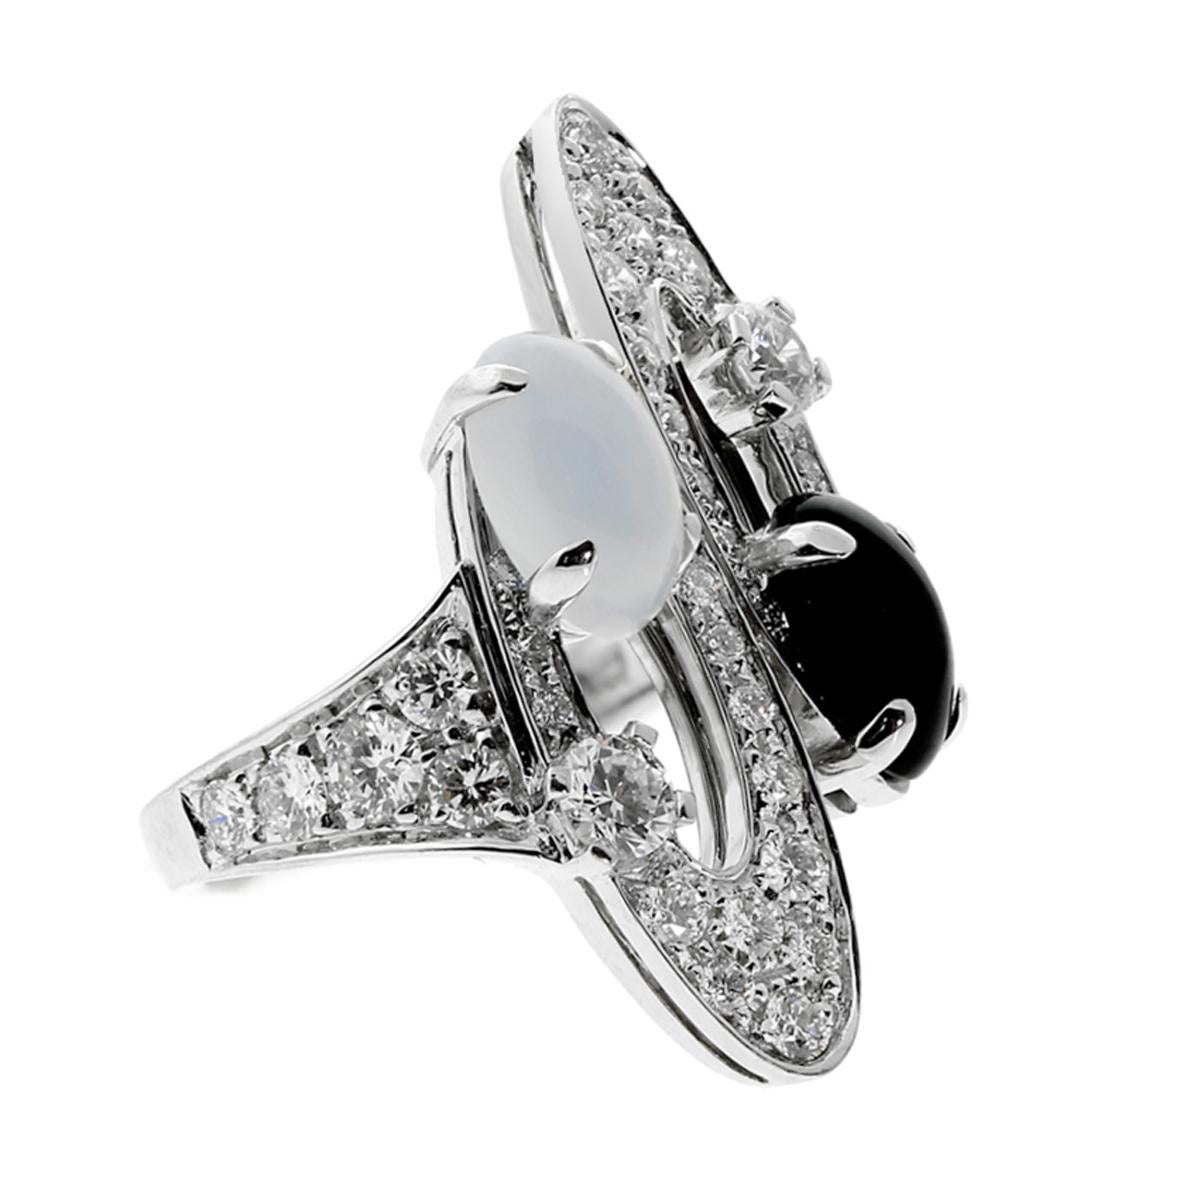 Une bague unique en or Elisia diamant onyx de Bulgari, avec des diamants ronds de taille brillant, de l'onyx et de la calcédoine sertis dans un superbe or blanc 18k. Cette bague étincelle et brille et ne manquera pas de faire impression. L'onyx et